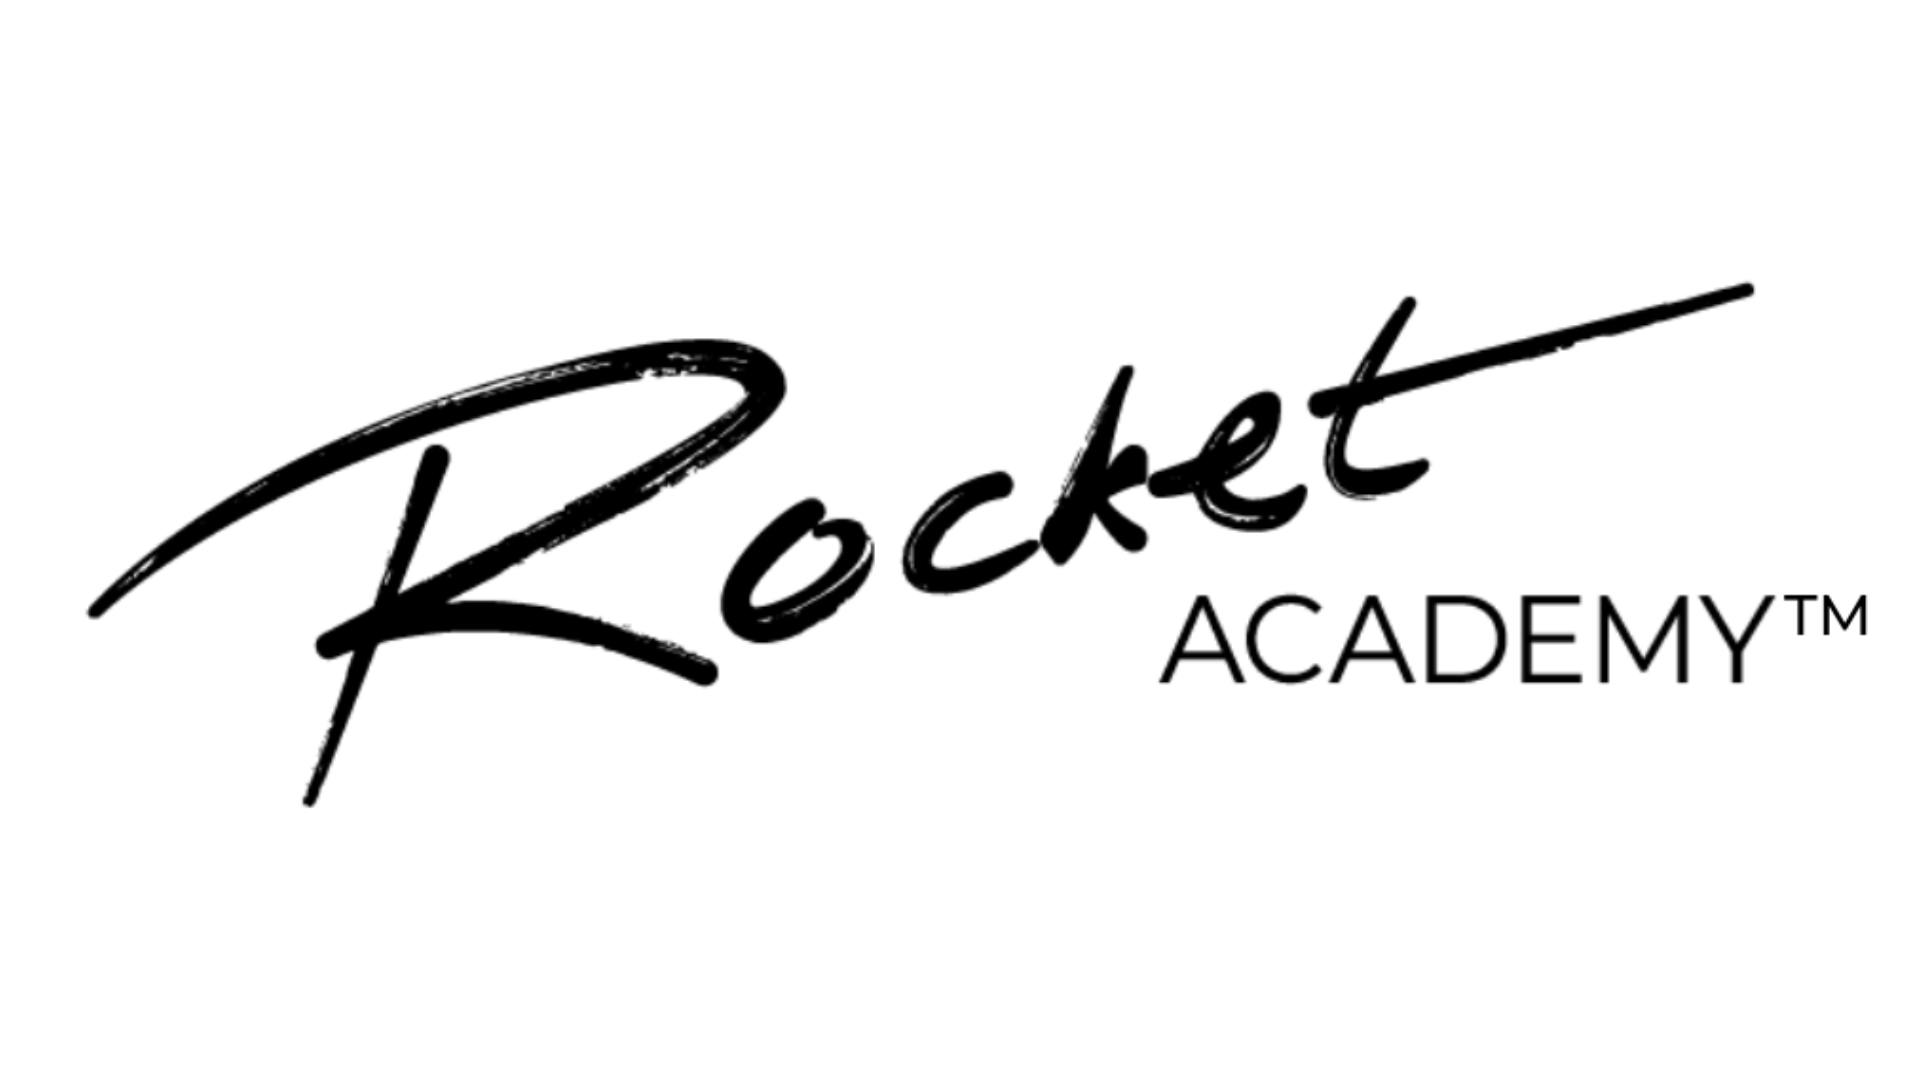 Rocket Academy™